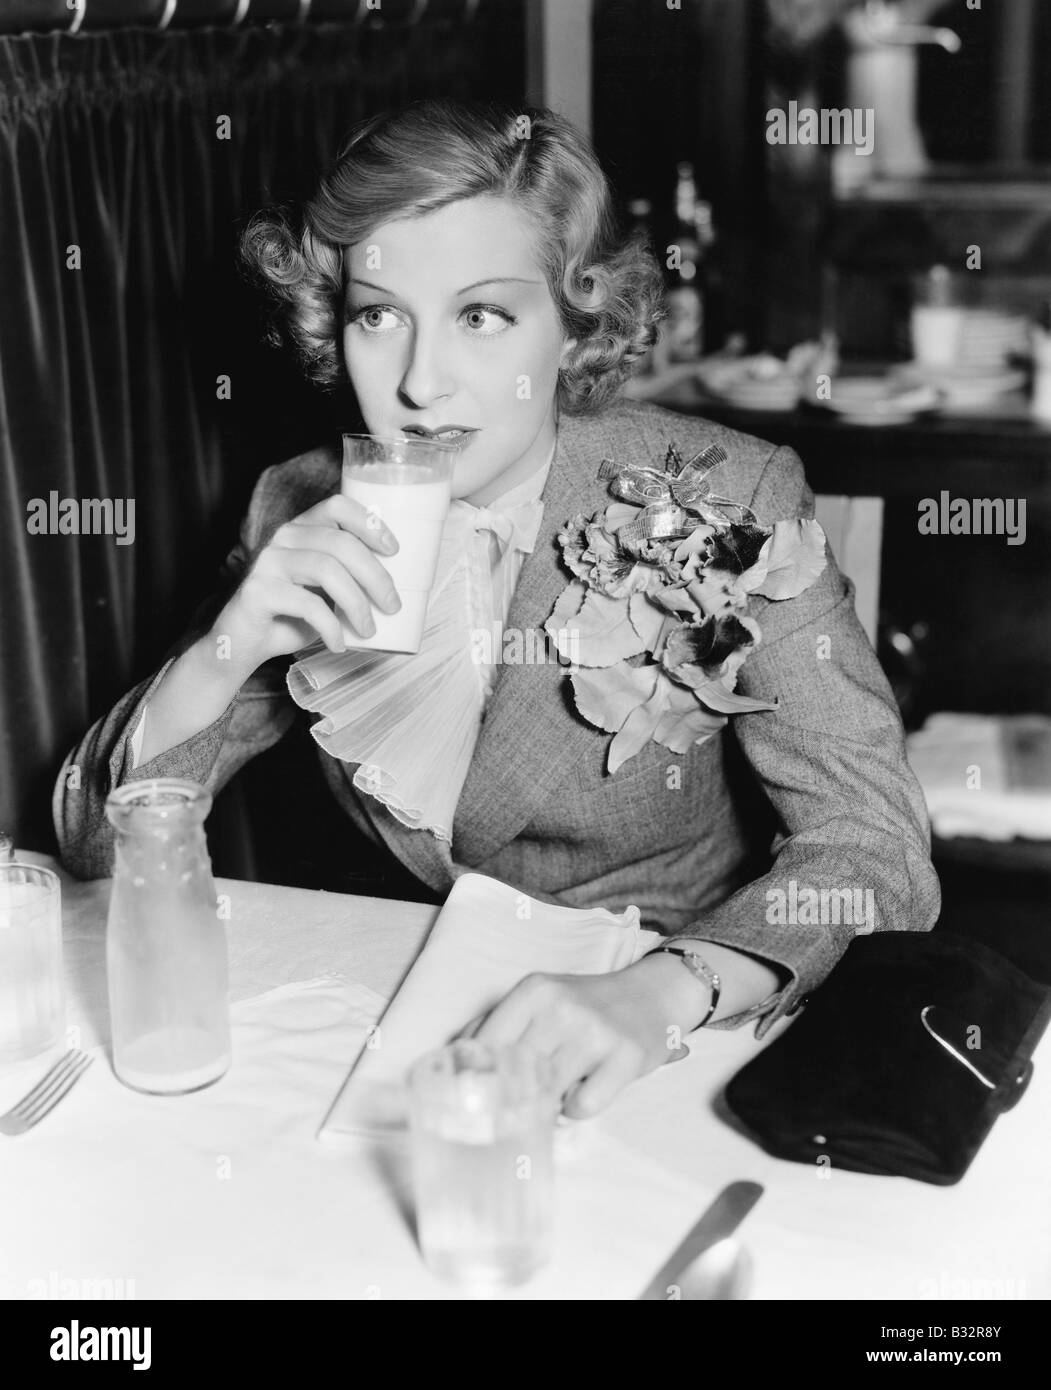 Jeune femme assise à une table dans un restaurant boire du lait Banque D'Images